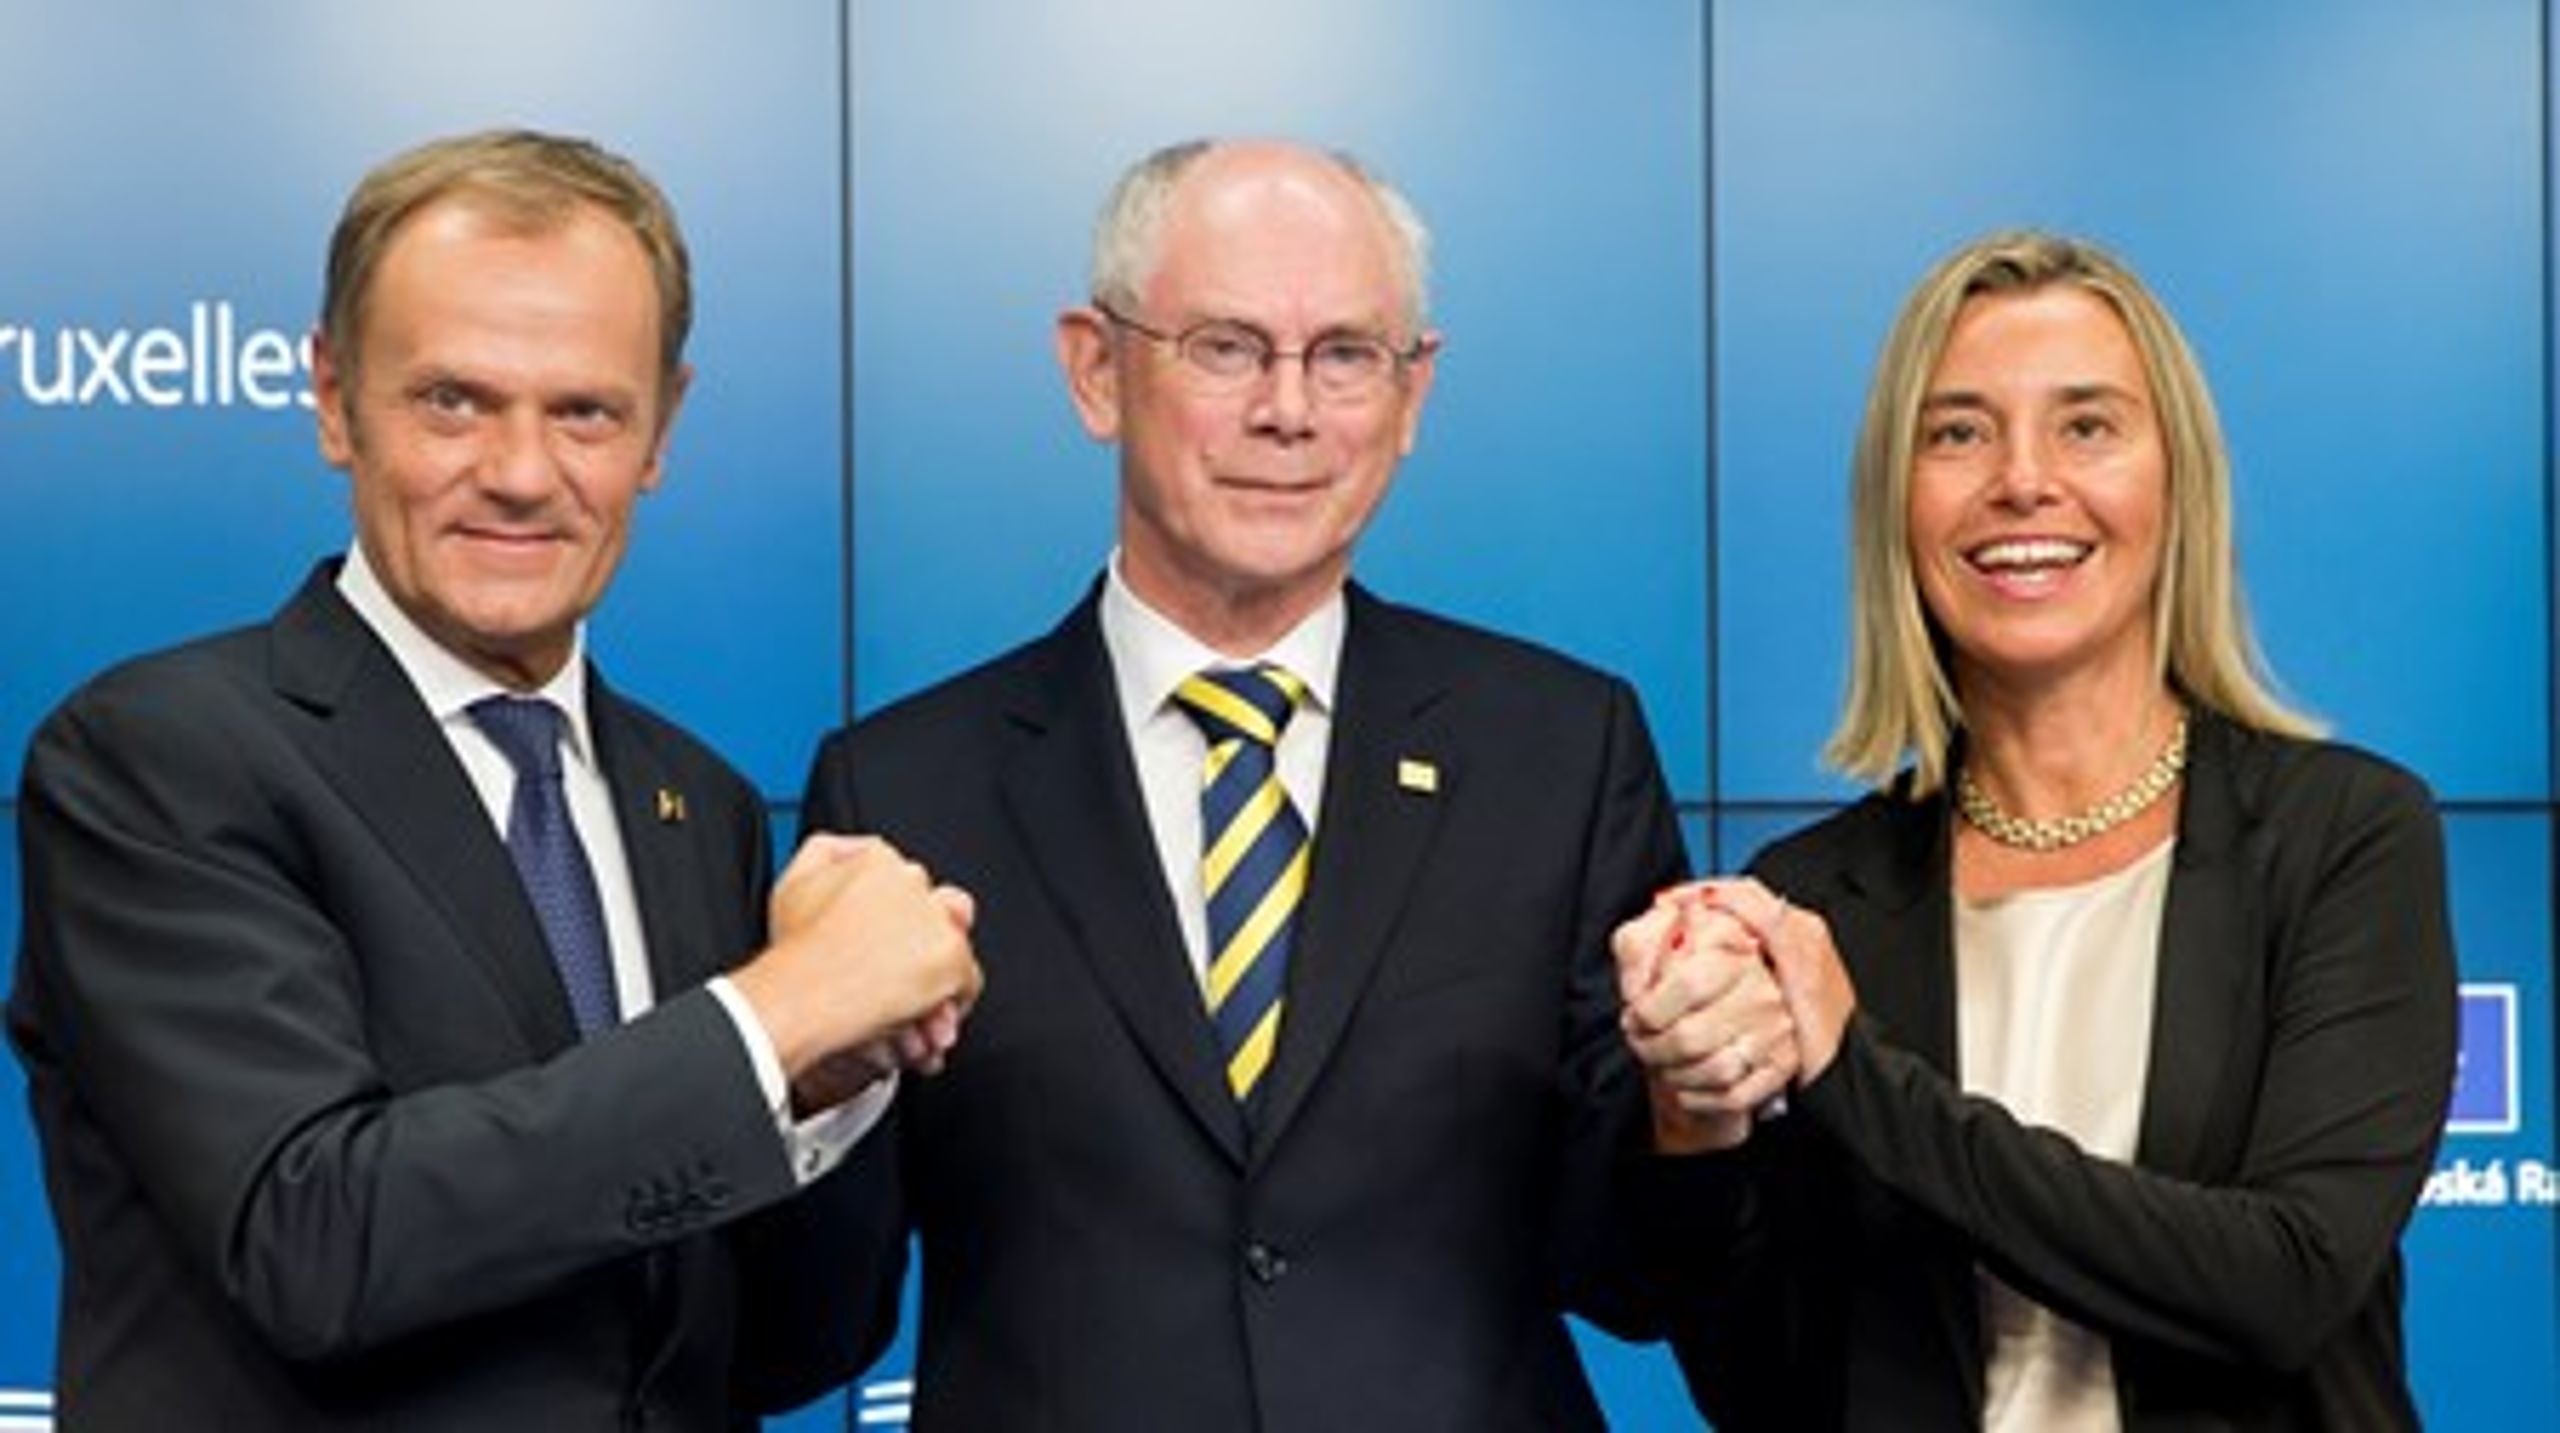 Den siddende formand for Det Europæiske Råd, Herman Van Rompuy, lykønsker sin efterfølger Donald Tusk (t.v)&nbsp;og den nyudpegede chef for EU's udenrigstjeneste, Federica Mogherini (t.h)&nbsp;